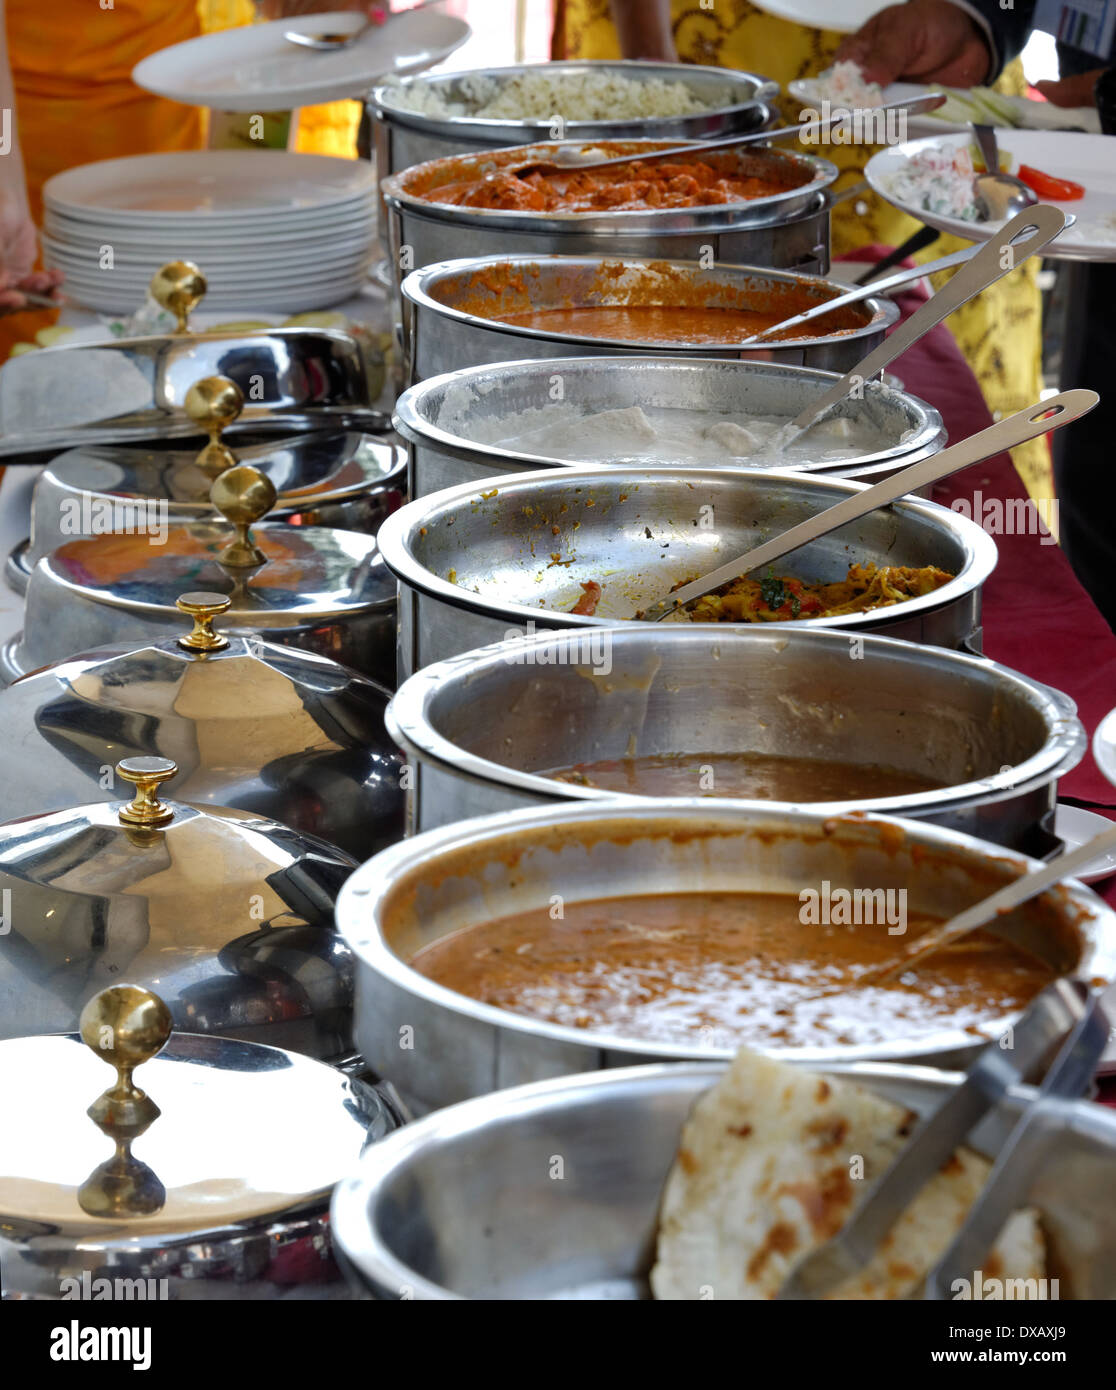 Cuisine indienne, servi dans des pots en acier inoxydable Banque D'Images